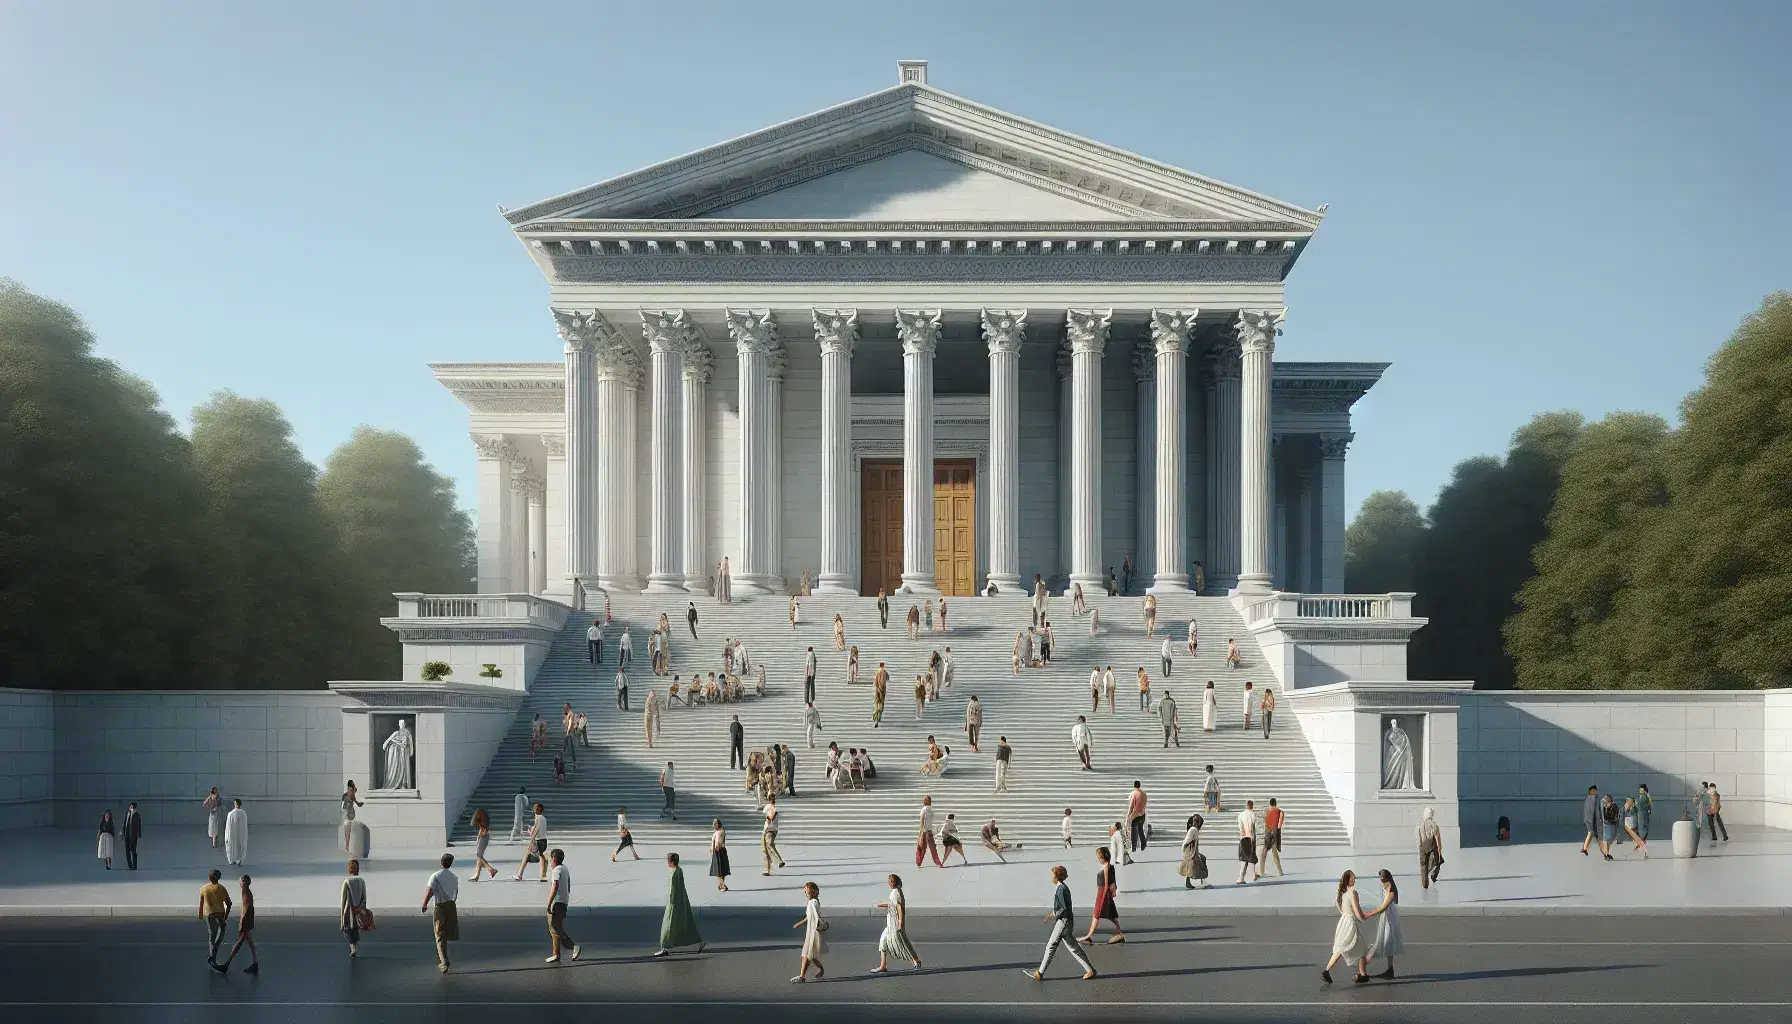 Edificio neoclásico con escalinata frontal, columnas corintias y pedimento triangular, personas caminando en un día soleado sin símbolos visibles.